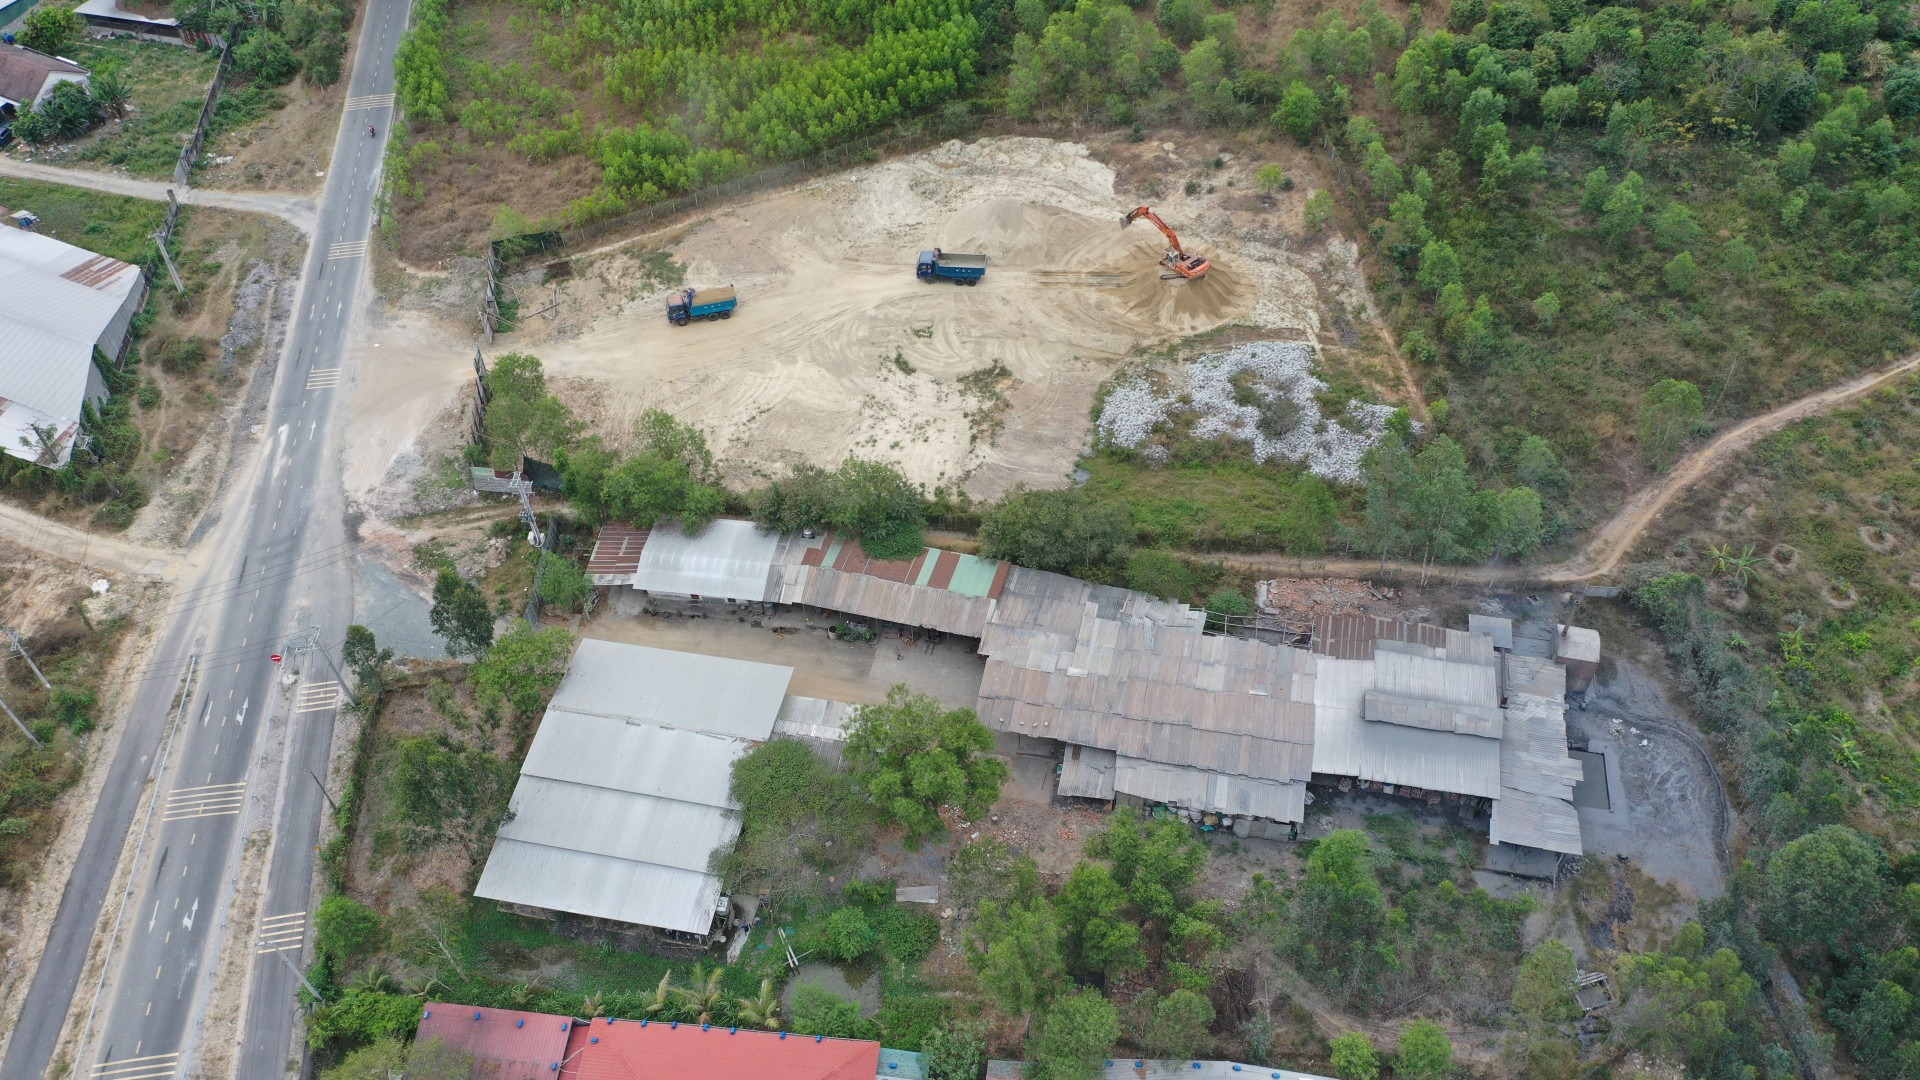 Cơ sở luyện nhôm An Nguyên xây dựng trái phép trên đất rừng tại xã Diên Thọ (huyện Diên Khánh).
